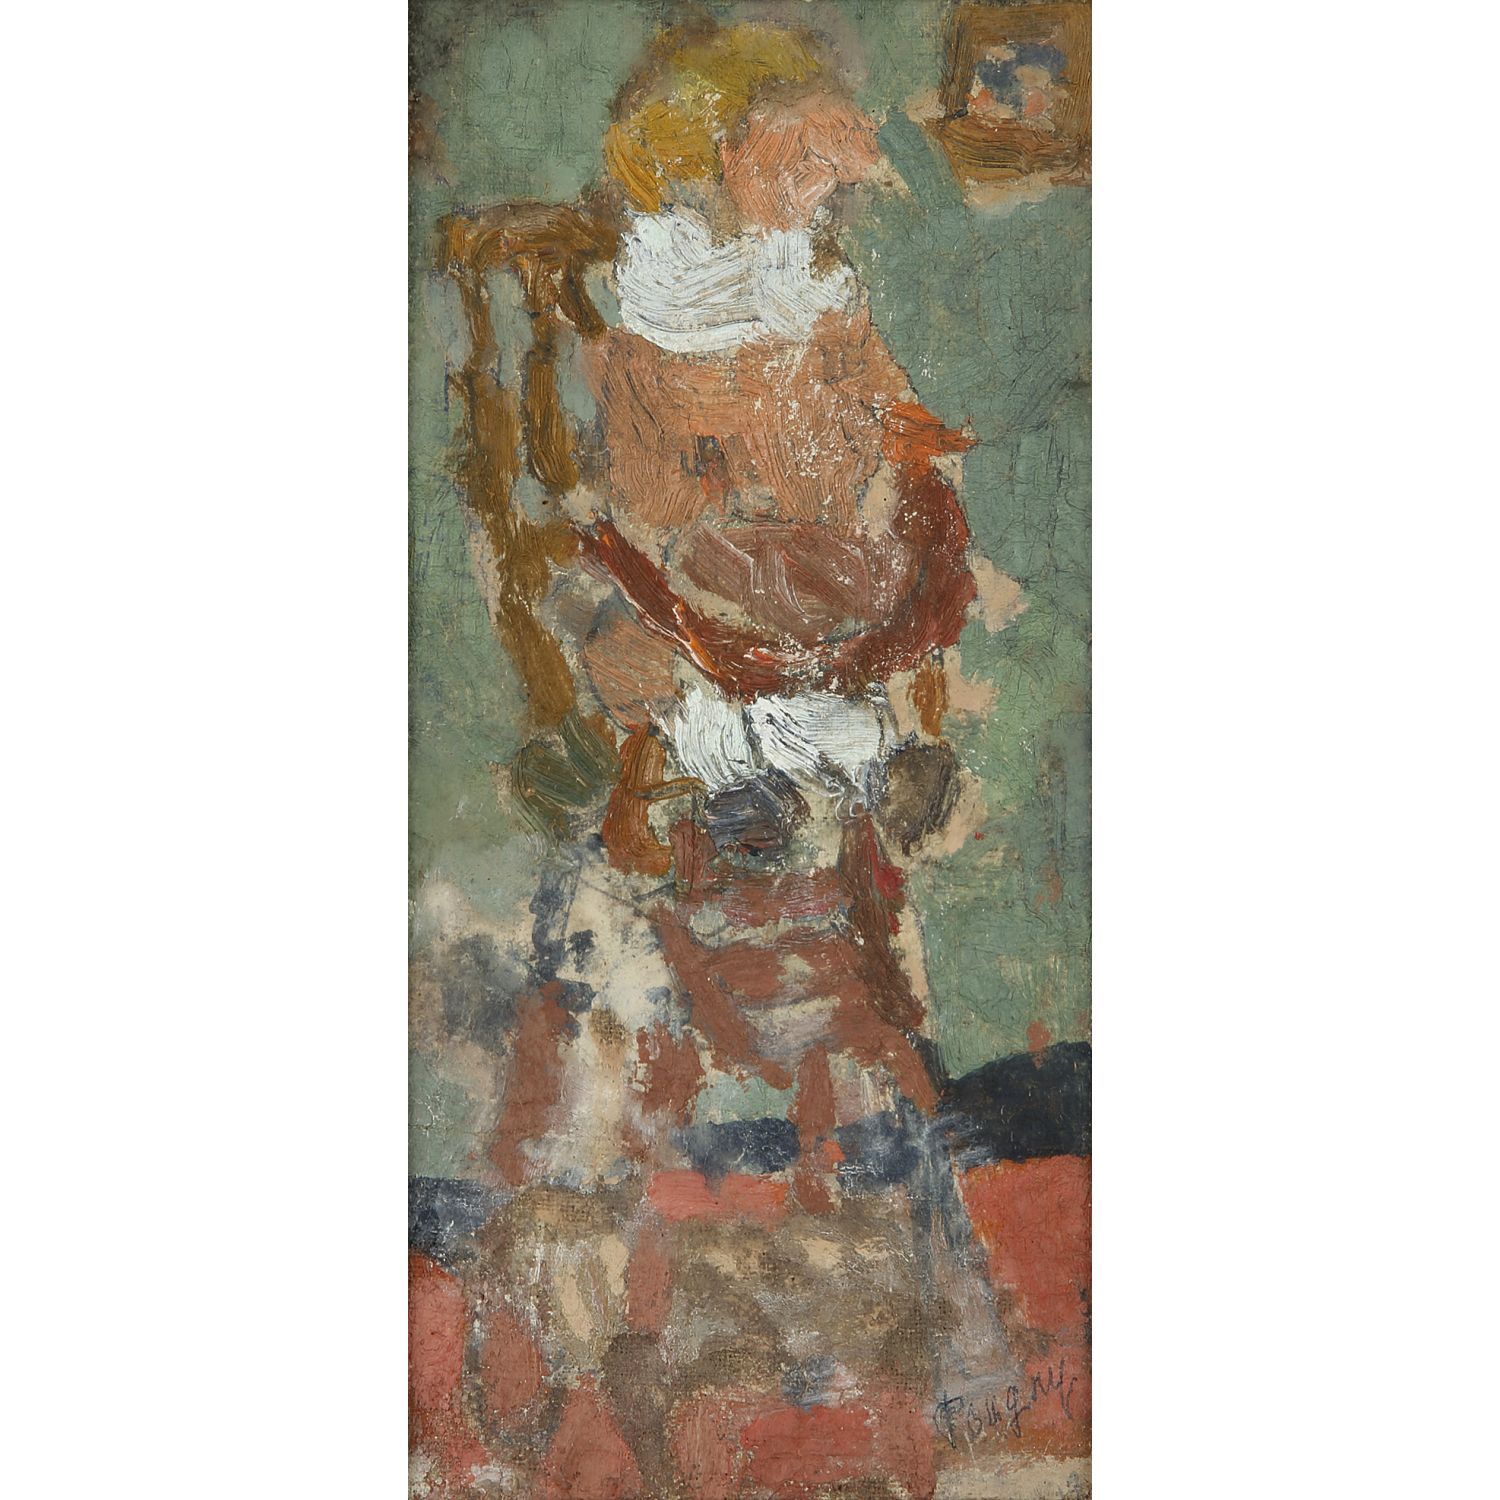 Null 让-普格尼(1894-1956)

孩子在高脚椅上

布面油画，装在面板上

右下方有签名

铺在画板上的油画；右下方有签名

17 x 8 cm -&hellip;